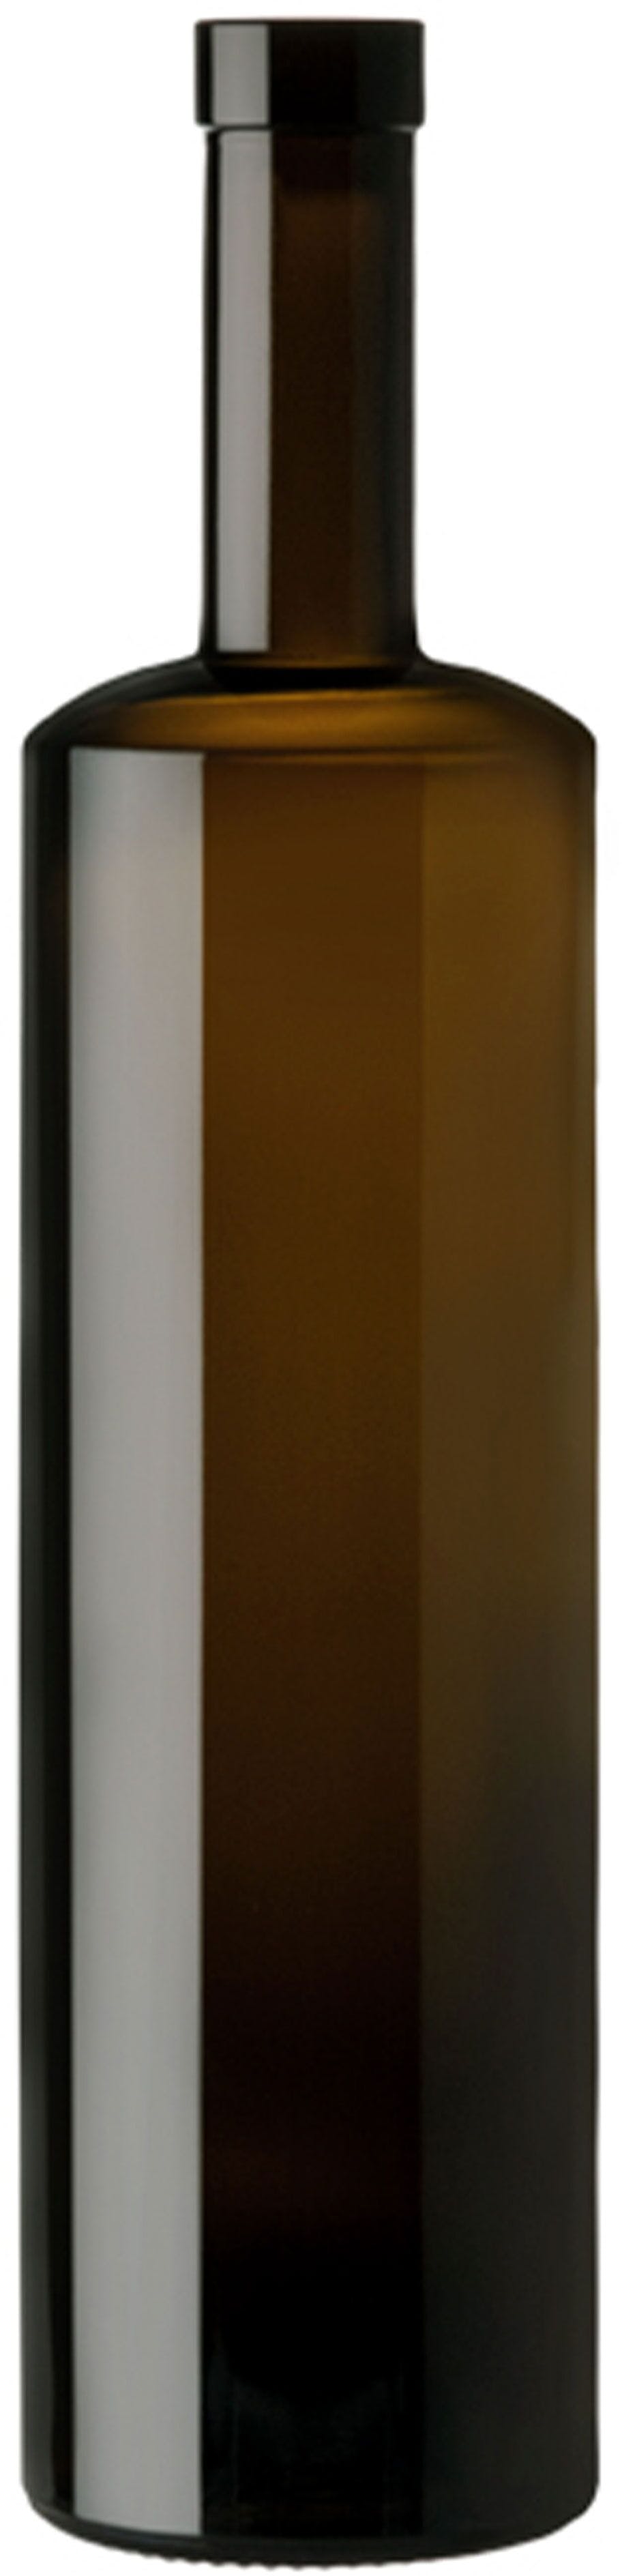 Bottle KIRA  WINE 750 ml BG-Cork